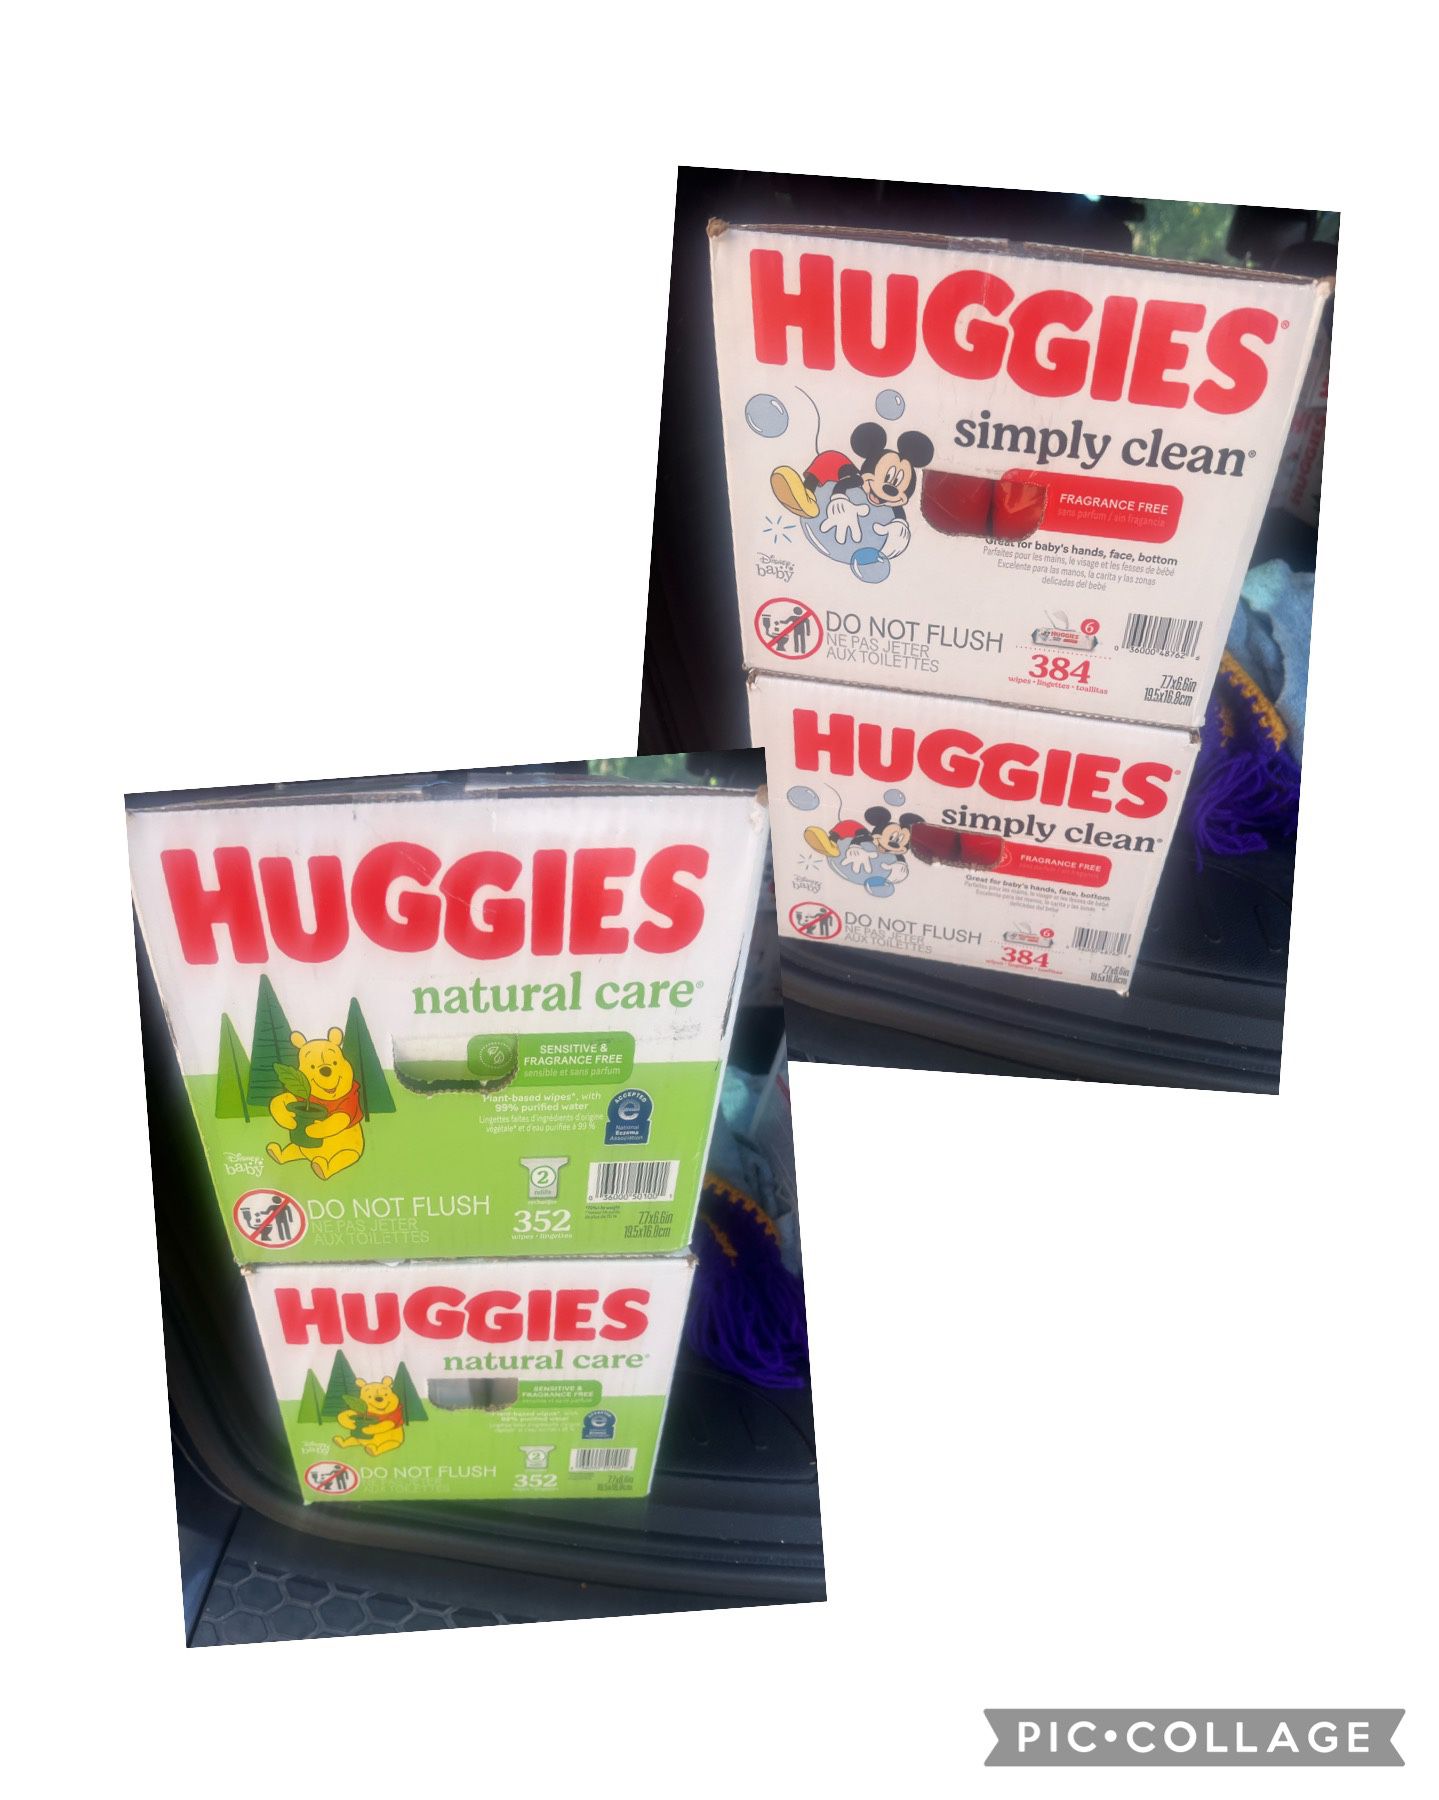 Huggies Wipes - $13 Each Box 